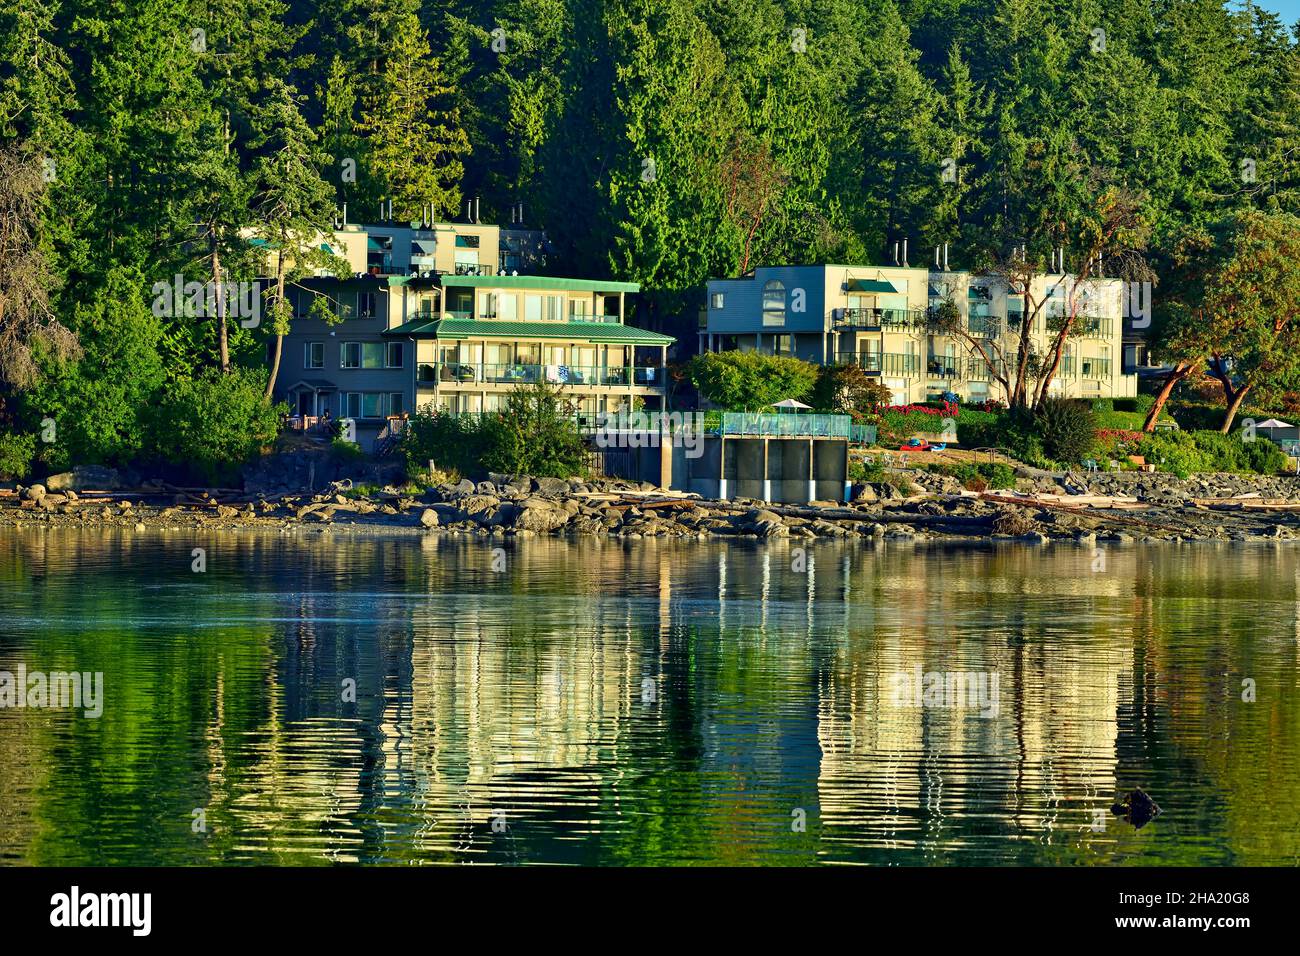 El complejo turístico Inn of the Sea está situado en el borde de las aguas en el canal Stuart, entre las islas del Golfo y la hermosa isla Vancouver B.C Foto de stock